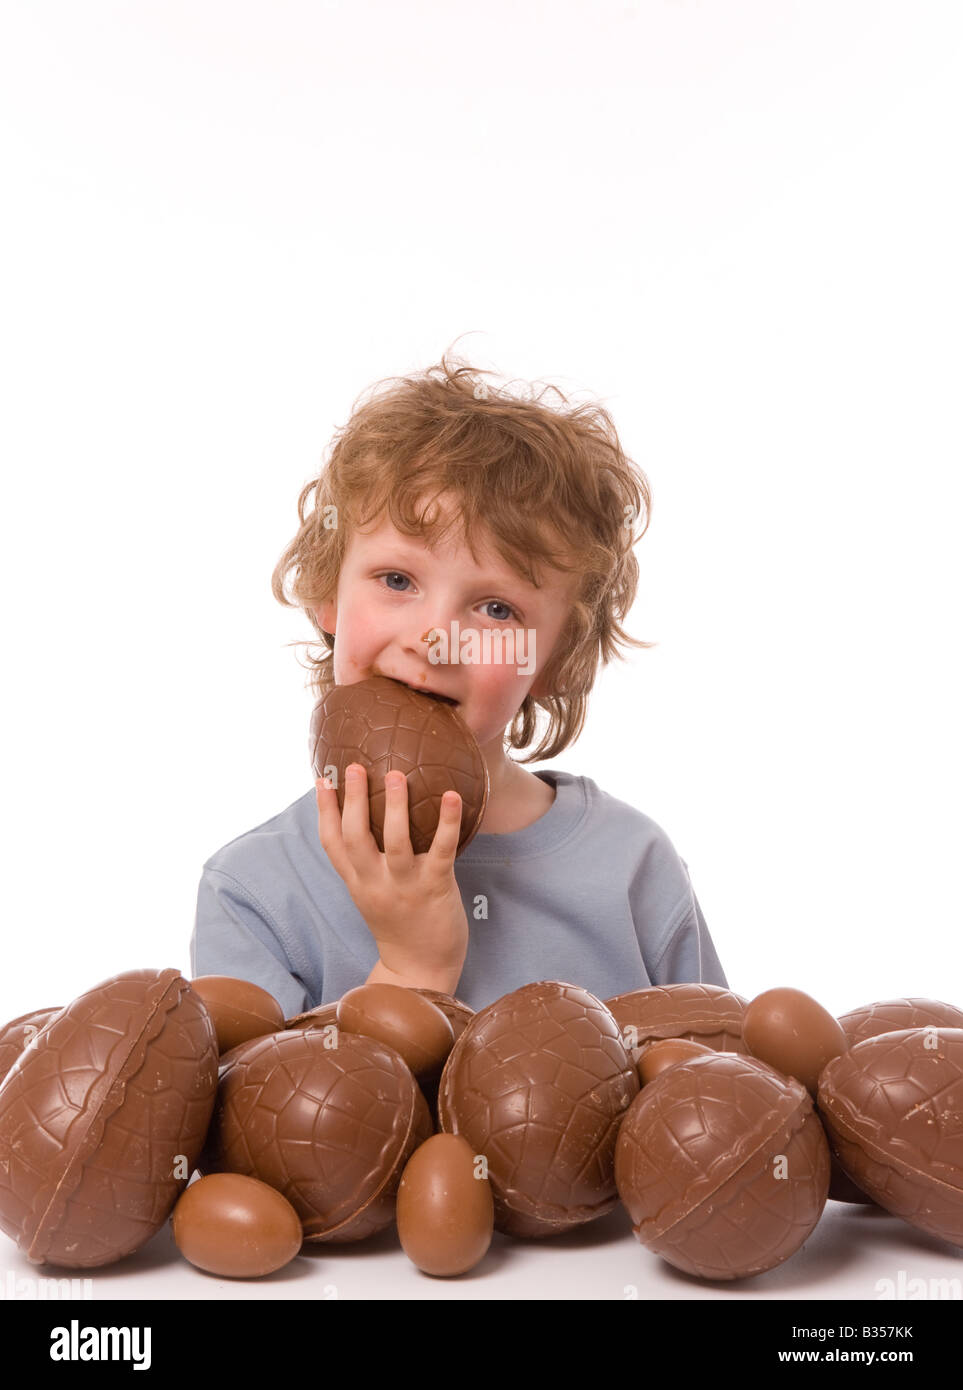 Jeune enfant avec une grosse pile d'œufs de pâques, mangeant un œuf au chocolat sur le visage. Banque D'Images